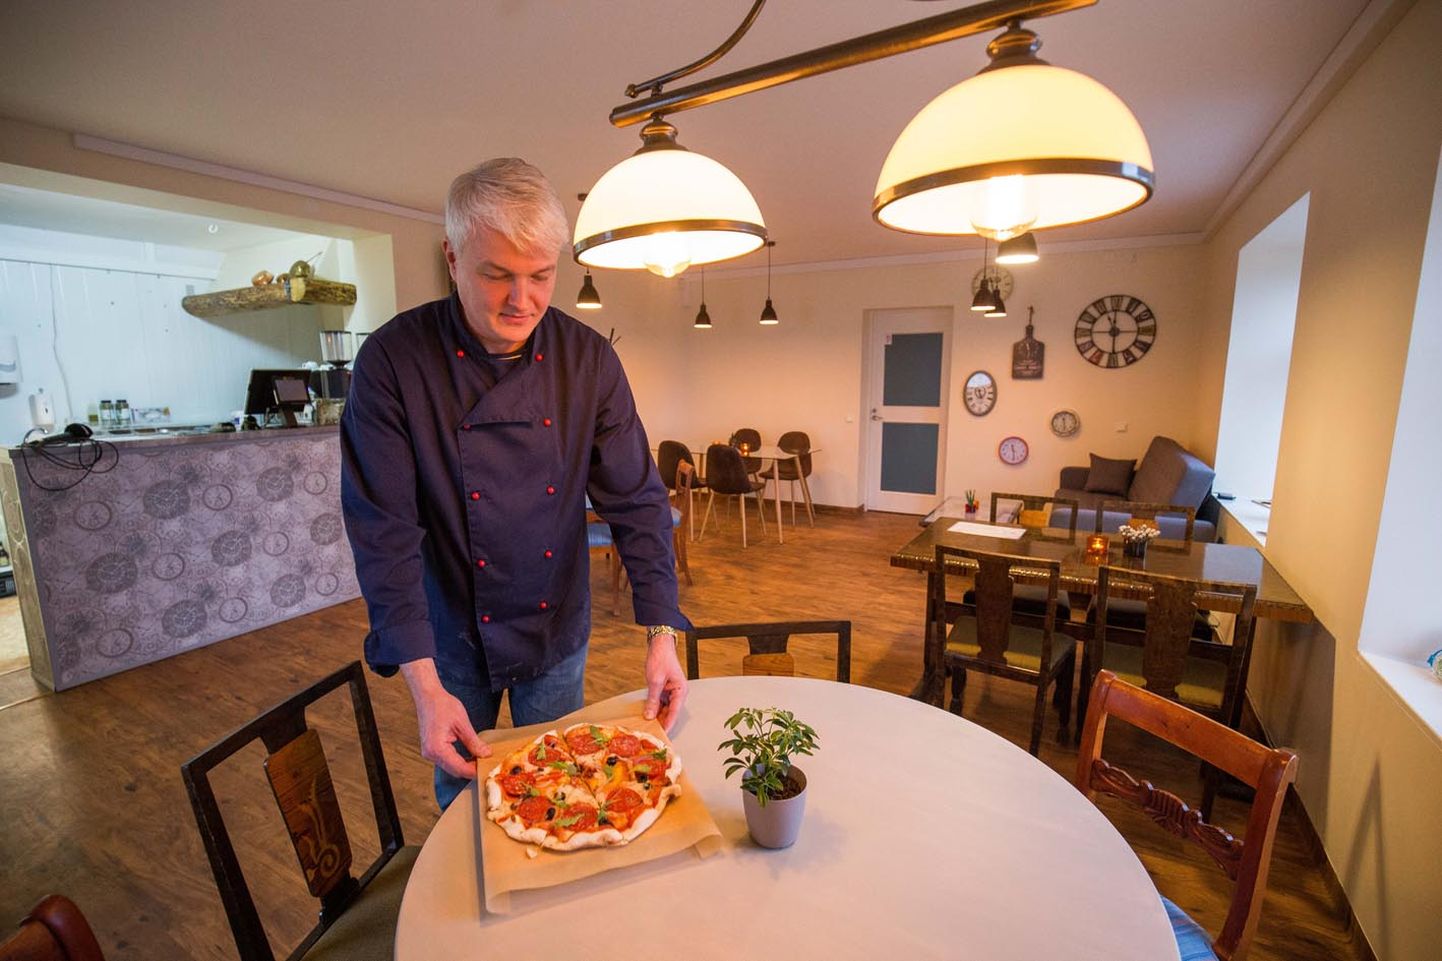 Viimased nädal aega on Mäekülas olnud avatud uus kohvik Italiano Pasta & Pizza. Tegemist on suuresti pereettevõtmisega, seega lööb toidutegemises kokana kaasa ka koha eestvedaja Peeter Tuiman.